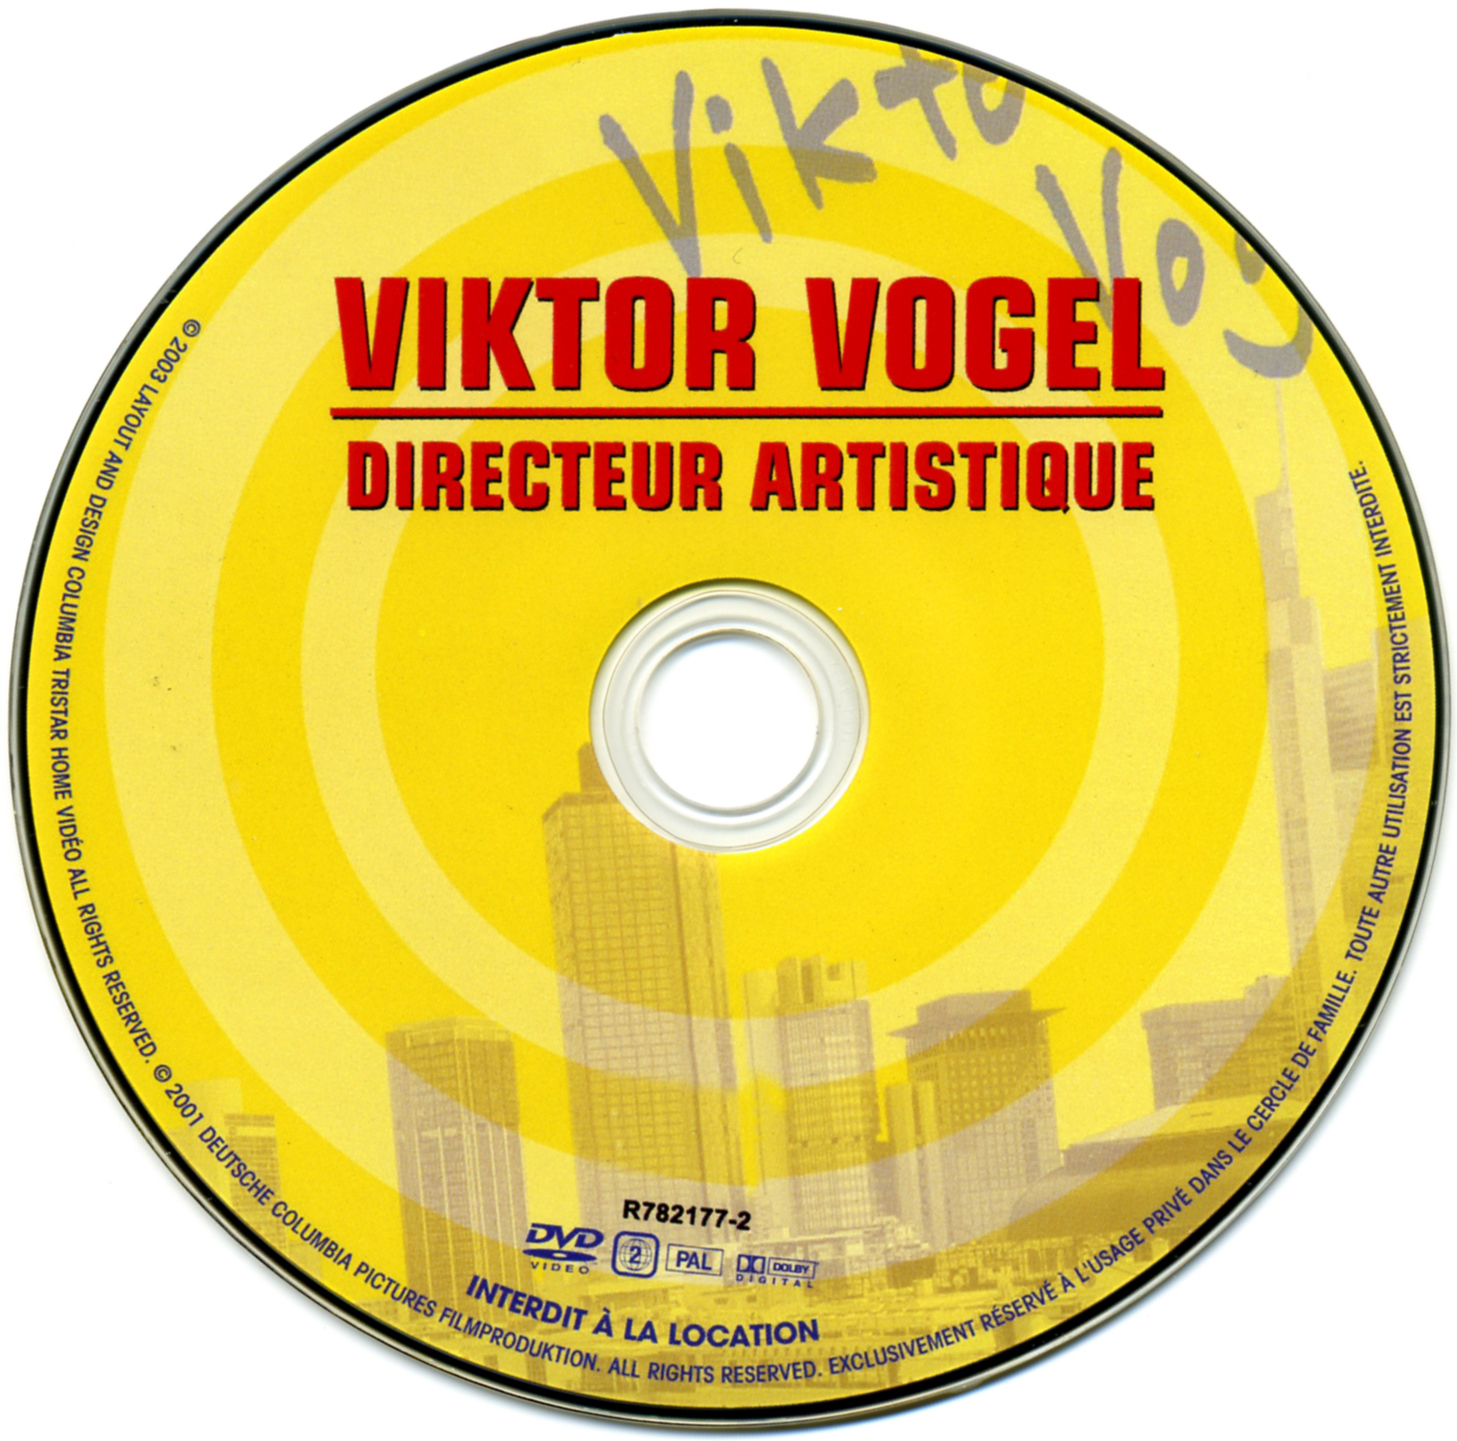 Viktor Vogel directeur artistique